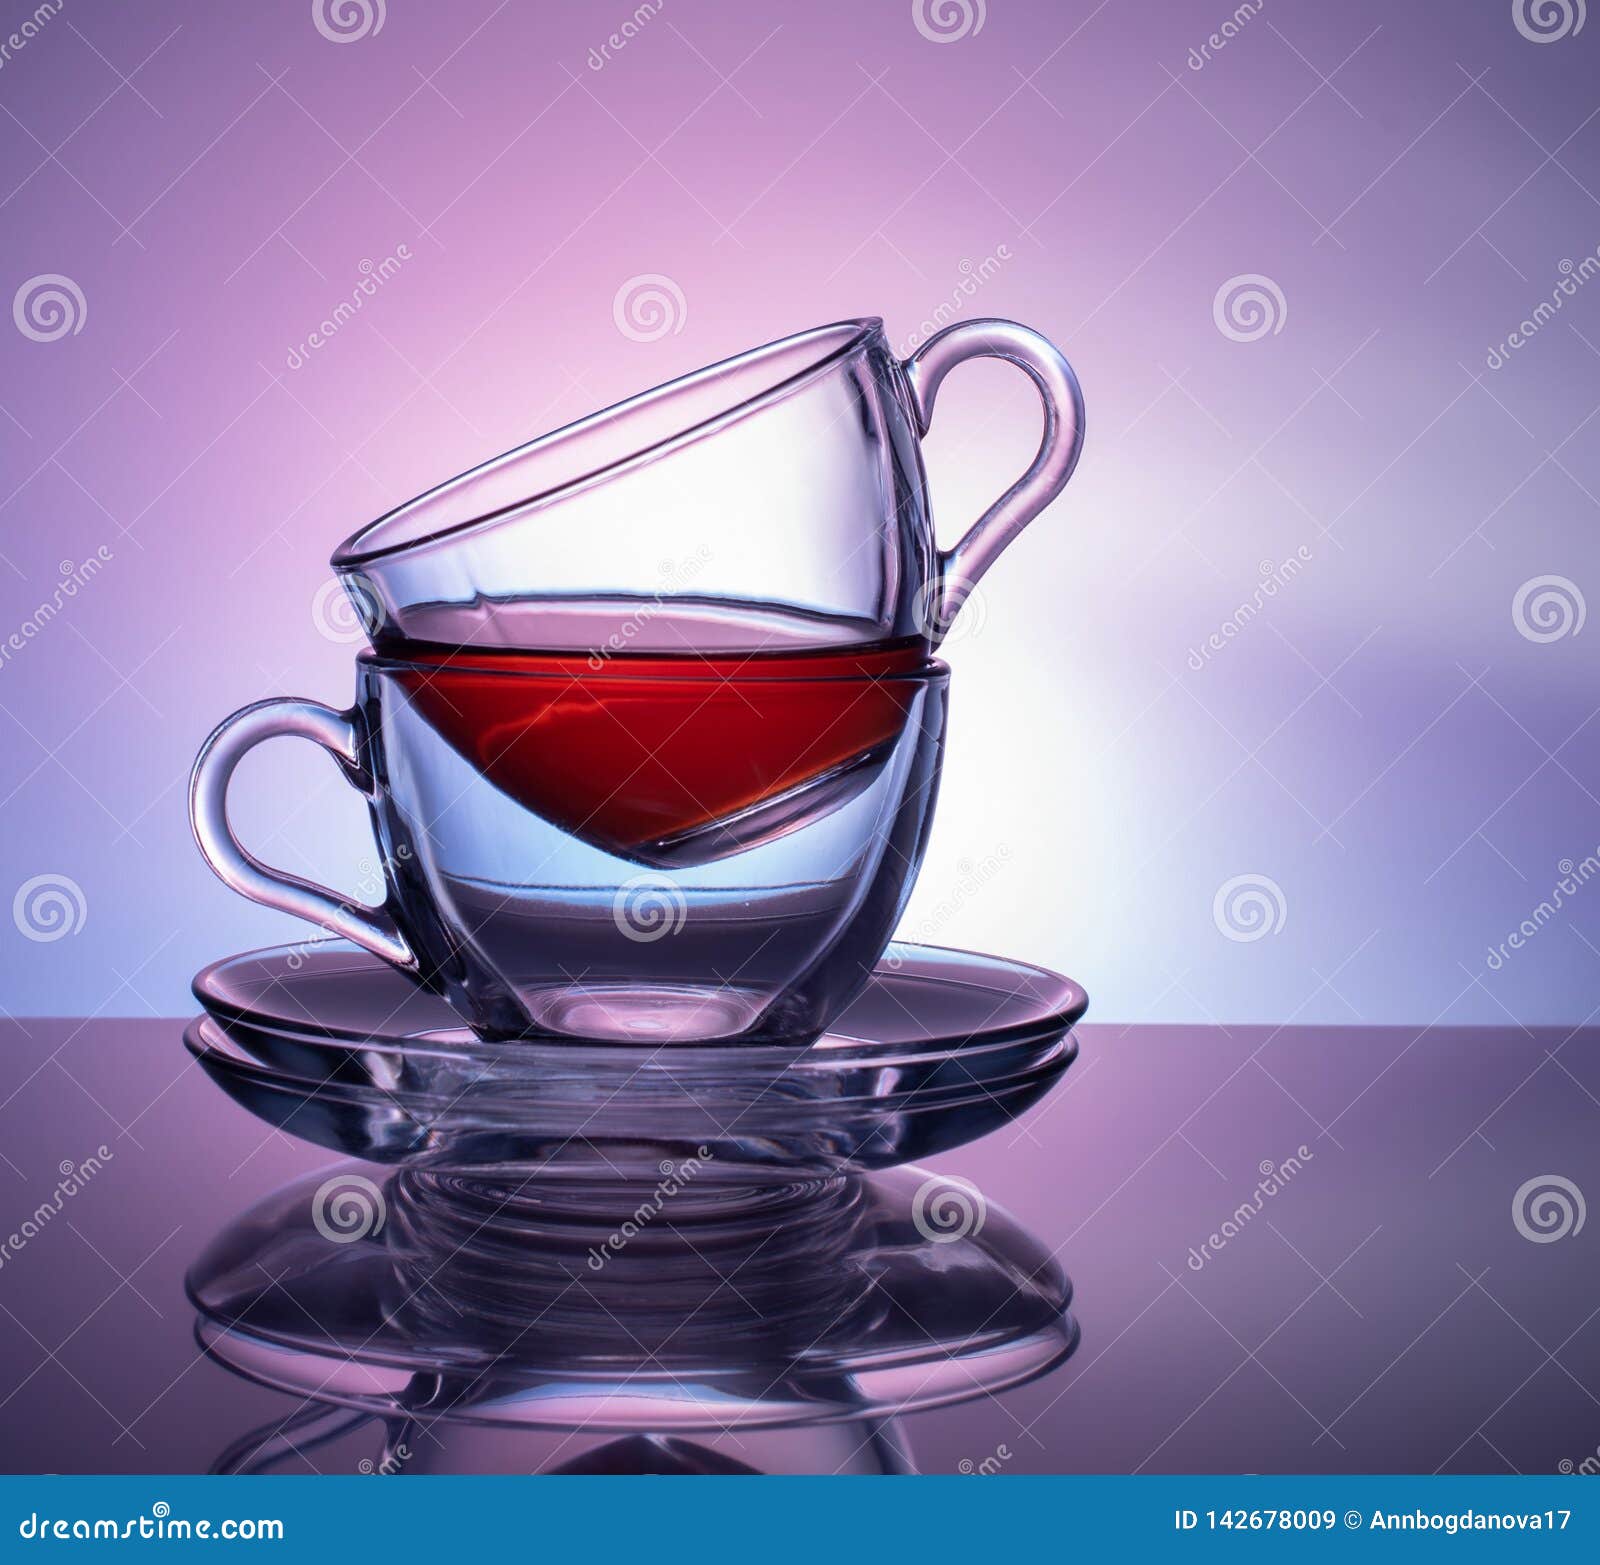 Um grupo de 2 copos de vidro para o chá em um fundo roxo e lilás Conceito. Um grupo de dois copos de vidro para o chá em um fundo roxo e lilás Conceito glassware Chá inacabado